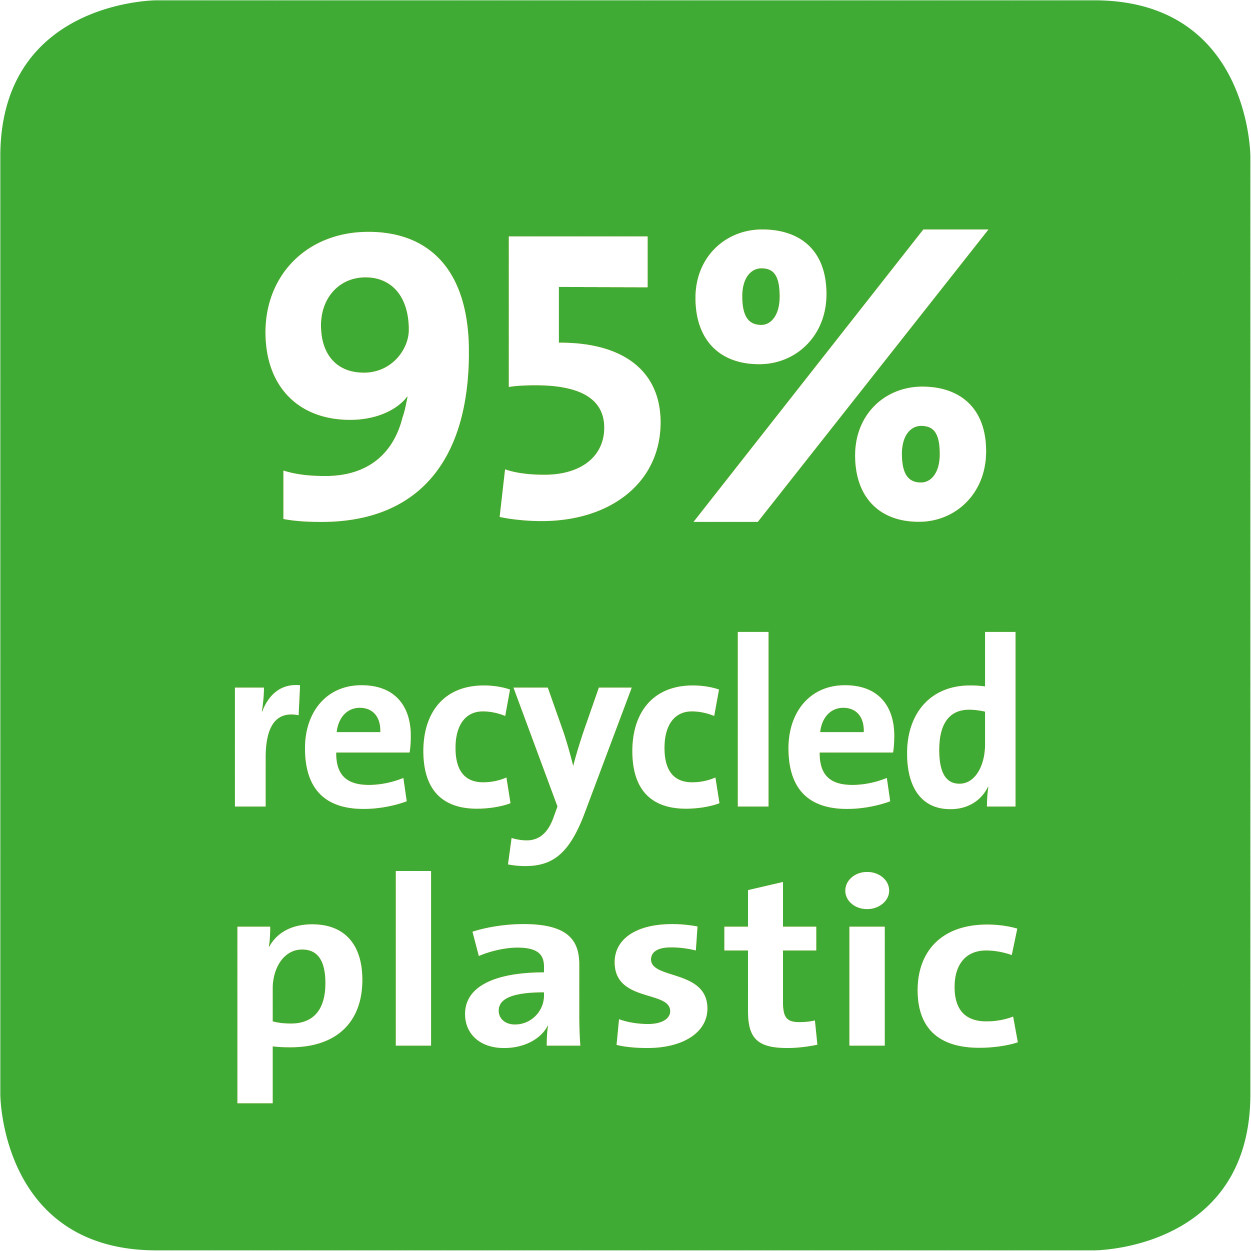 Hodnota udává podíl recyklace produktu v procentech